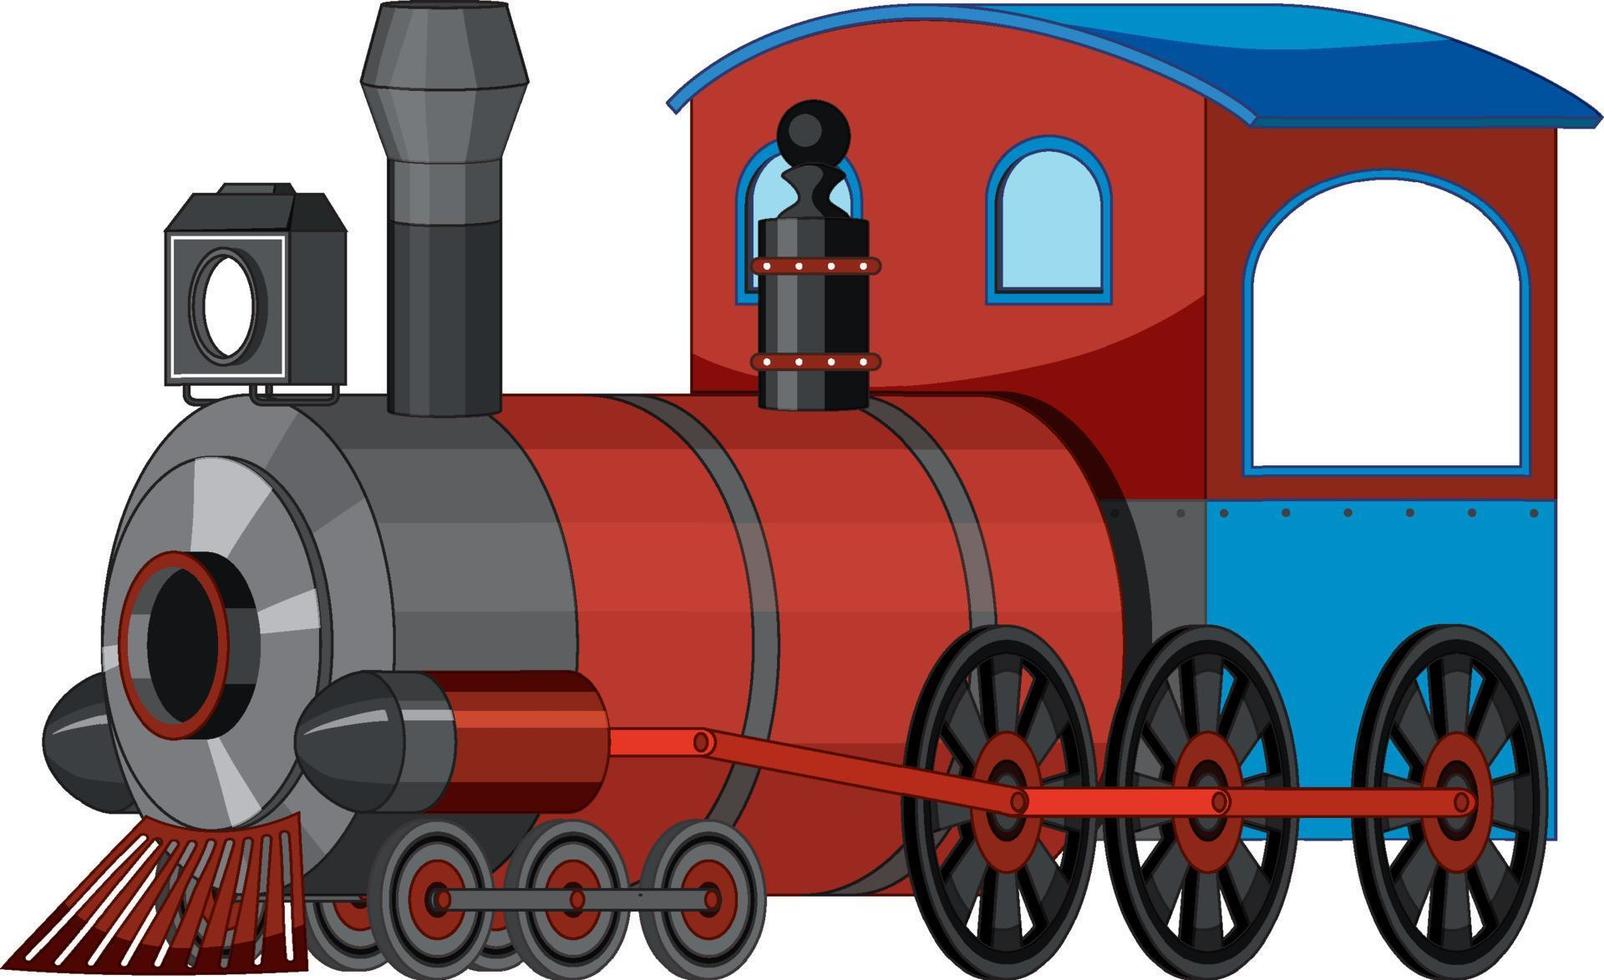 estilo vintage de trem de locomotiva a vapor vetor